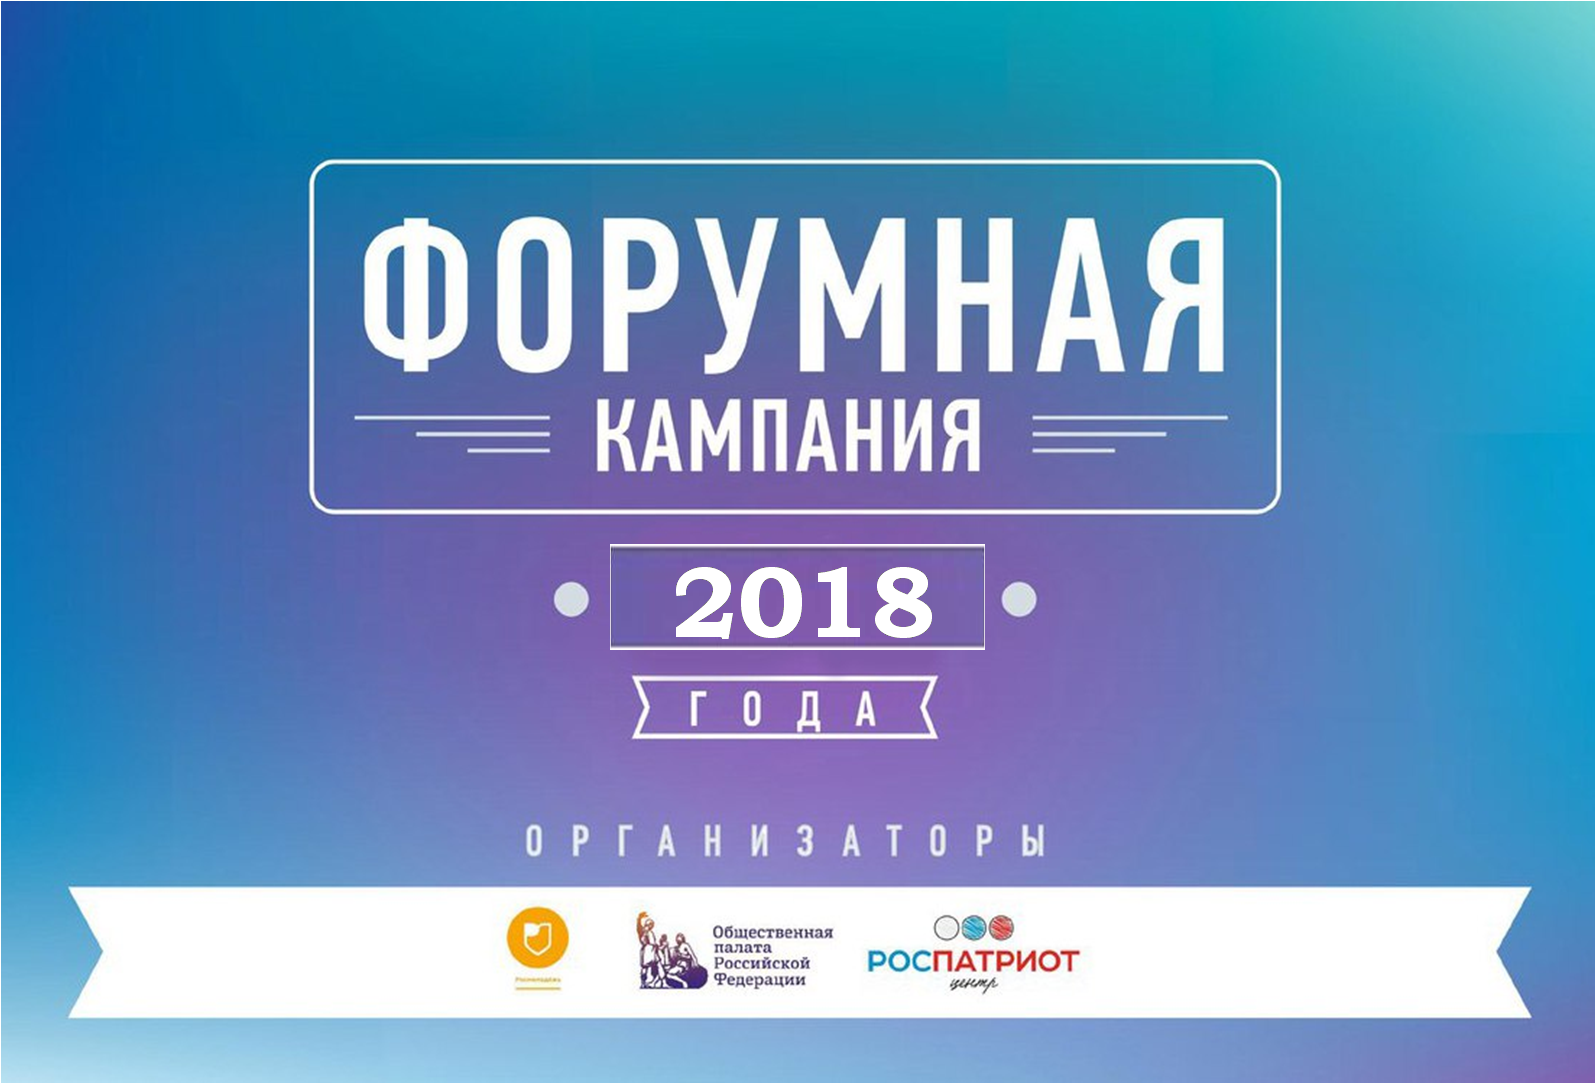 Презентация Всероссийской форумной кампании 2018 года пройдет в Чите